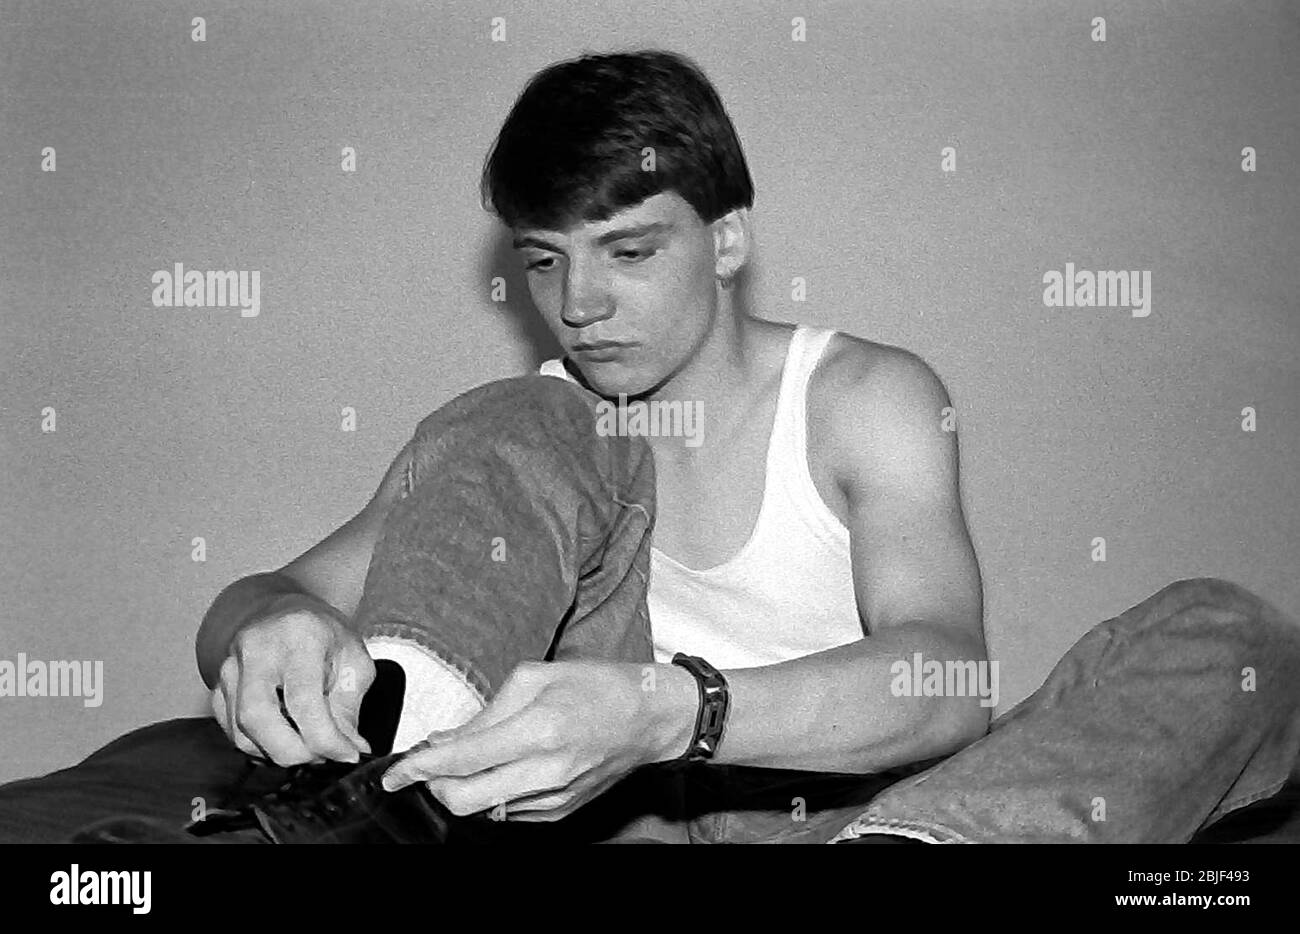 Portrait d'un adolescent caucasien de 17 ans, portant un gilet, assis en bas nouant les lacets de la chaussure qu'il porte à Manchester, royaume-uni, 1984. Banque D'Images